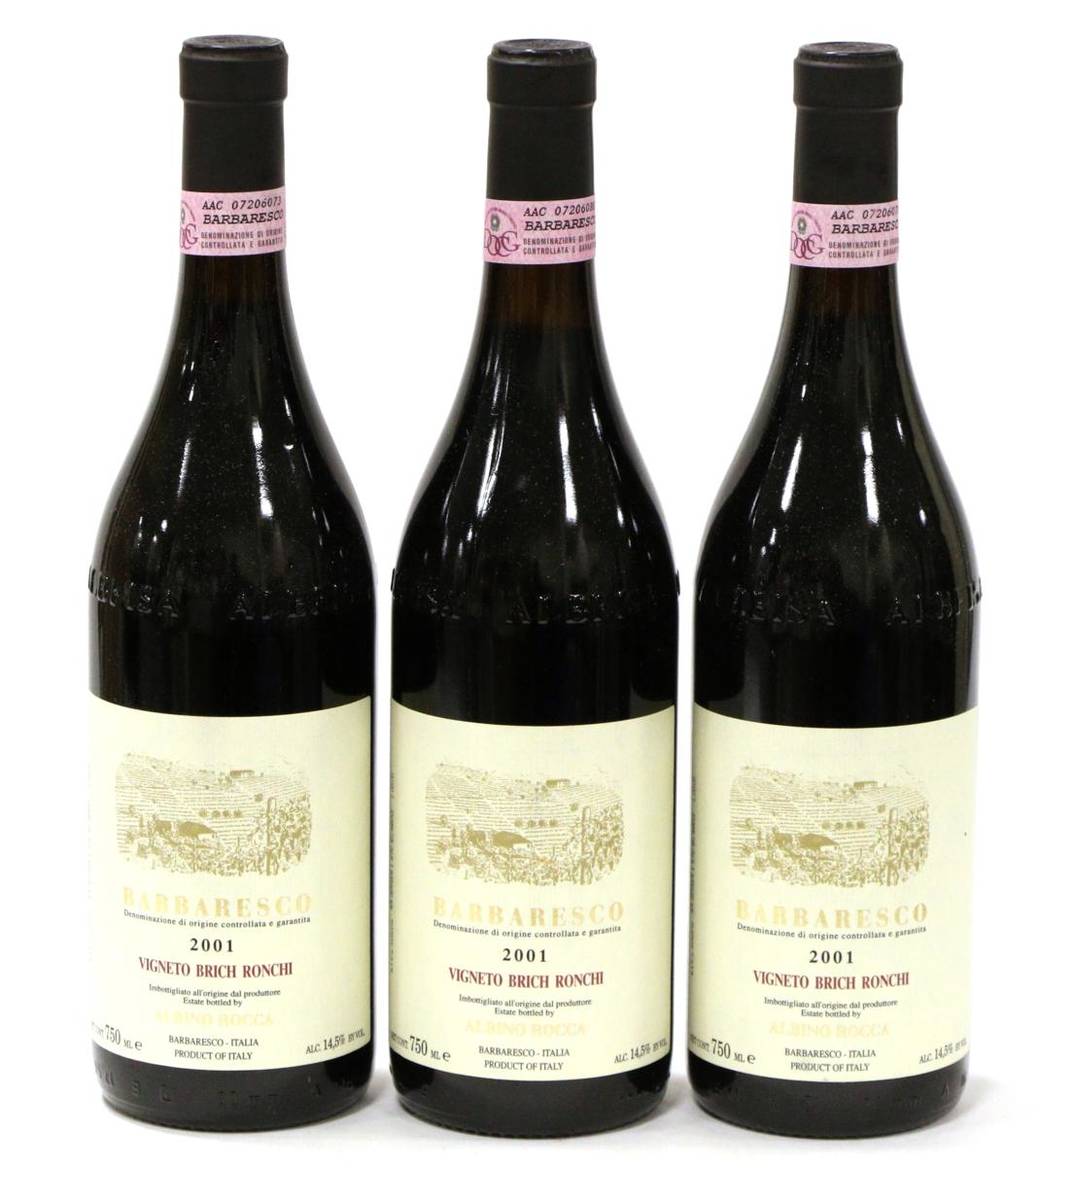 Lot 2260 - Albino Rocca Barbaresco Vigneto Brich Ronchi 2001 (x3) (three bottles)